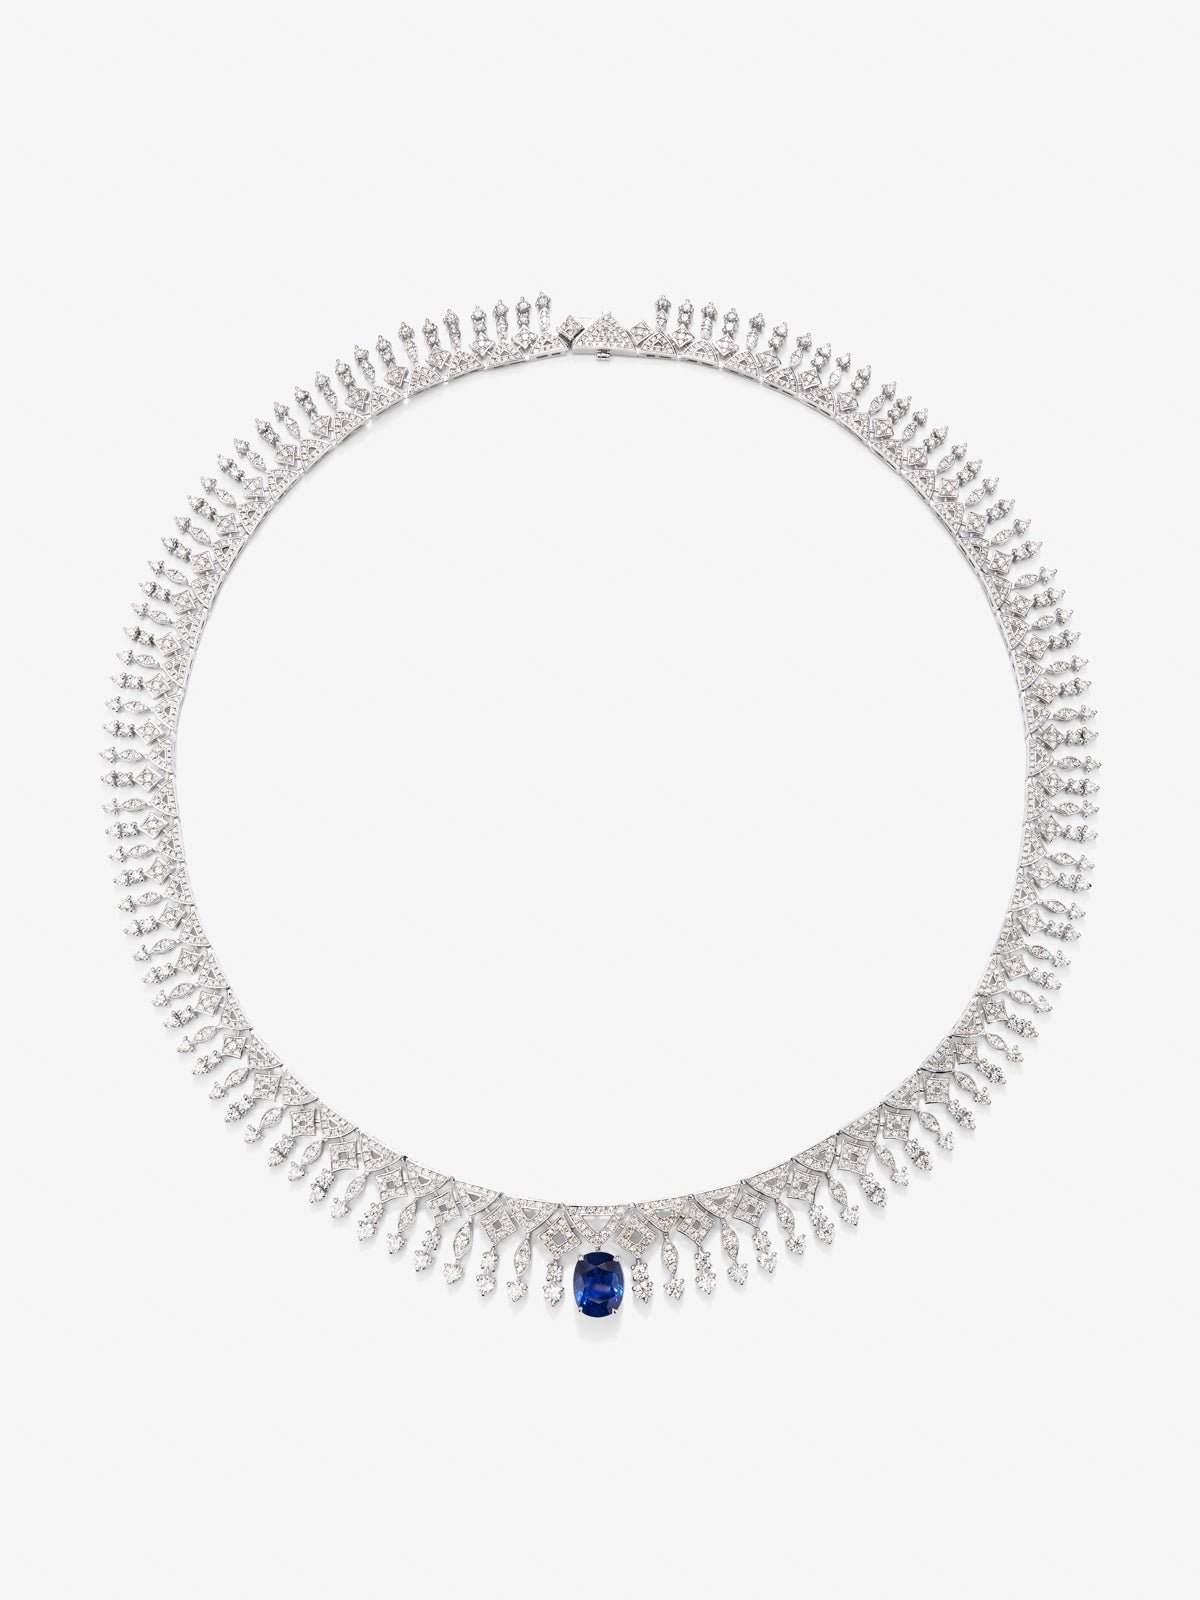 Collar de oro blanco de 18K con zafiro azul royal en talla oval de 3,92 y diamantes blancos en talla brillante de 9,27 cts